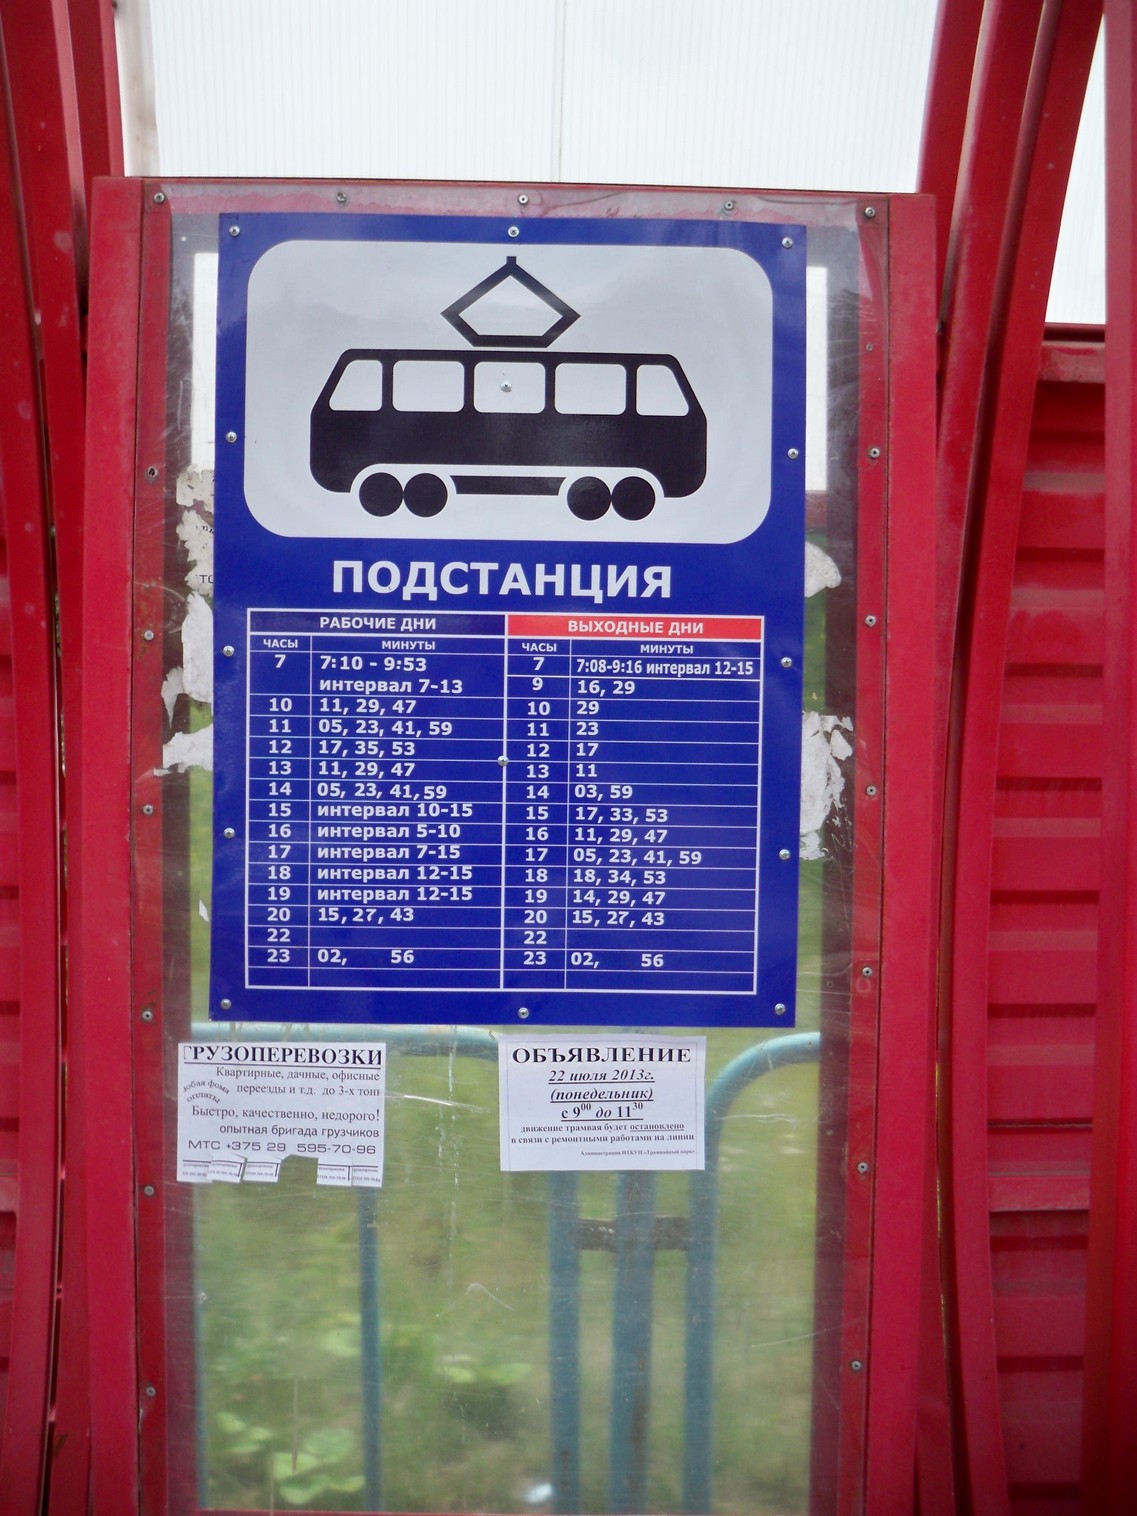 Новополоцкий трамвай  —  фотографии, сделанные в 2013 году (часть 3)